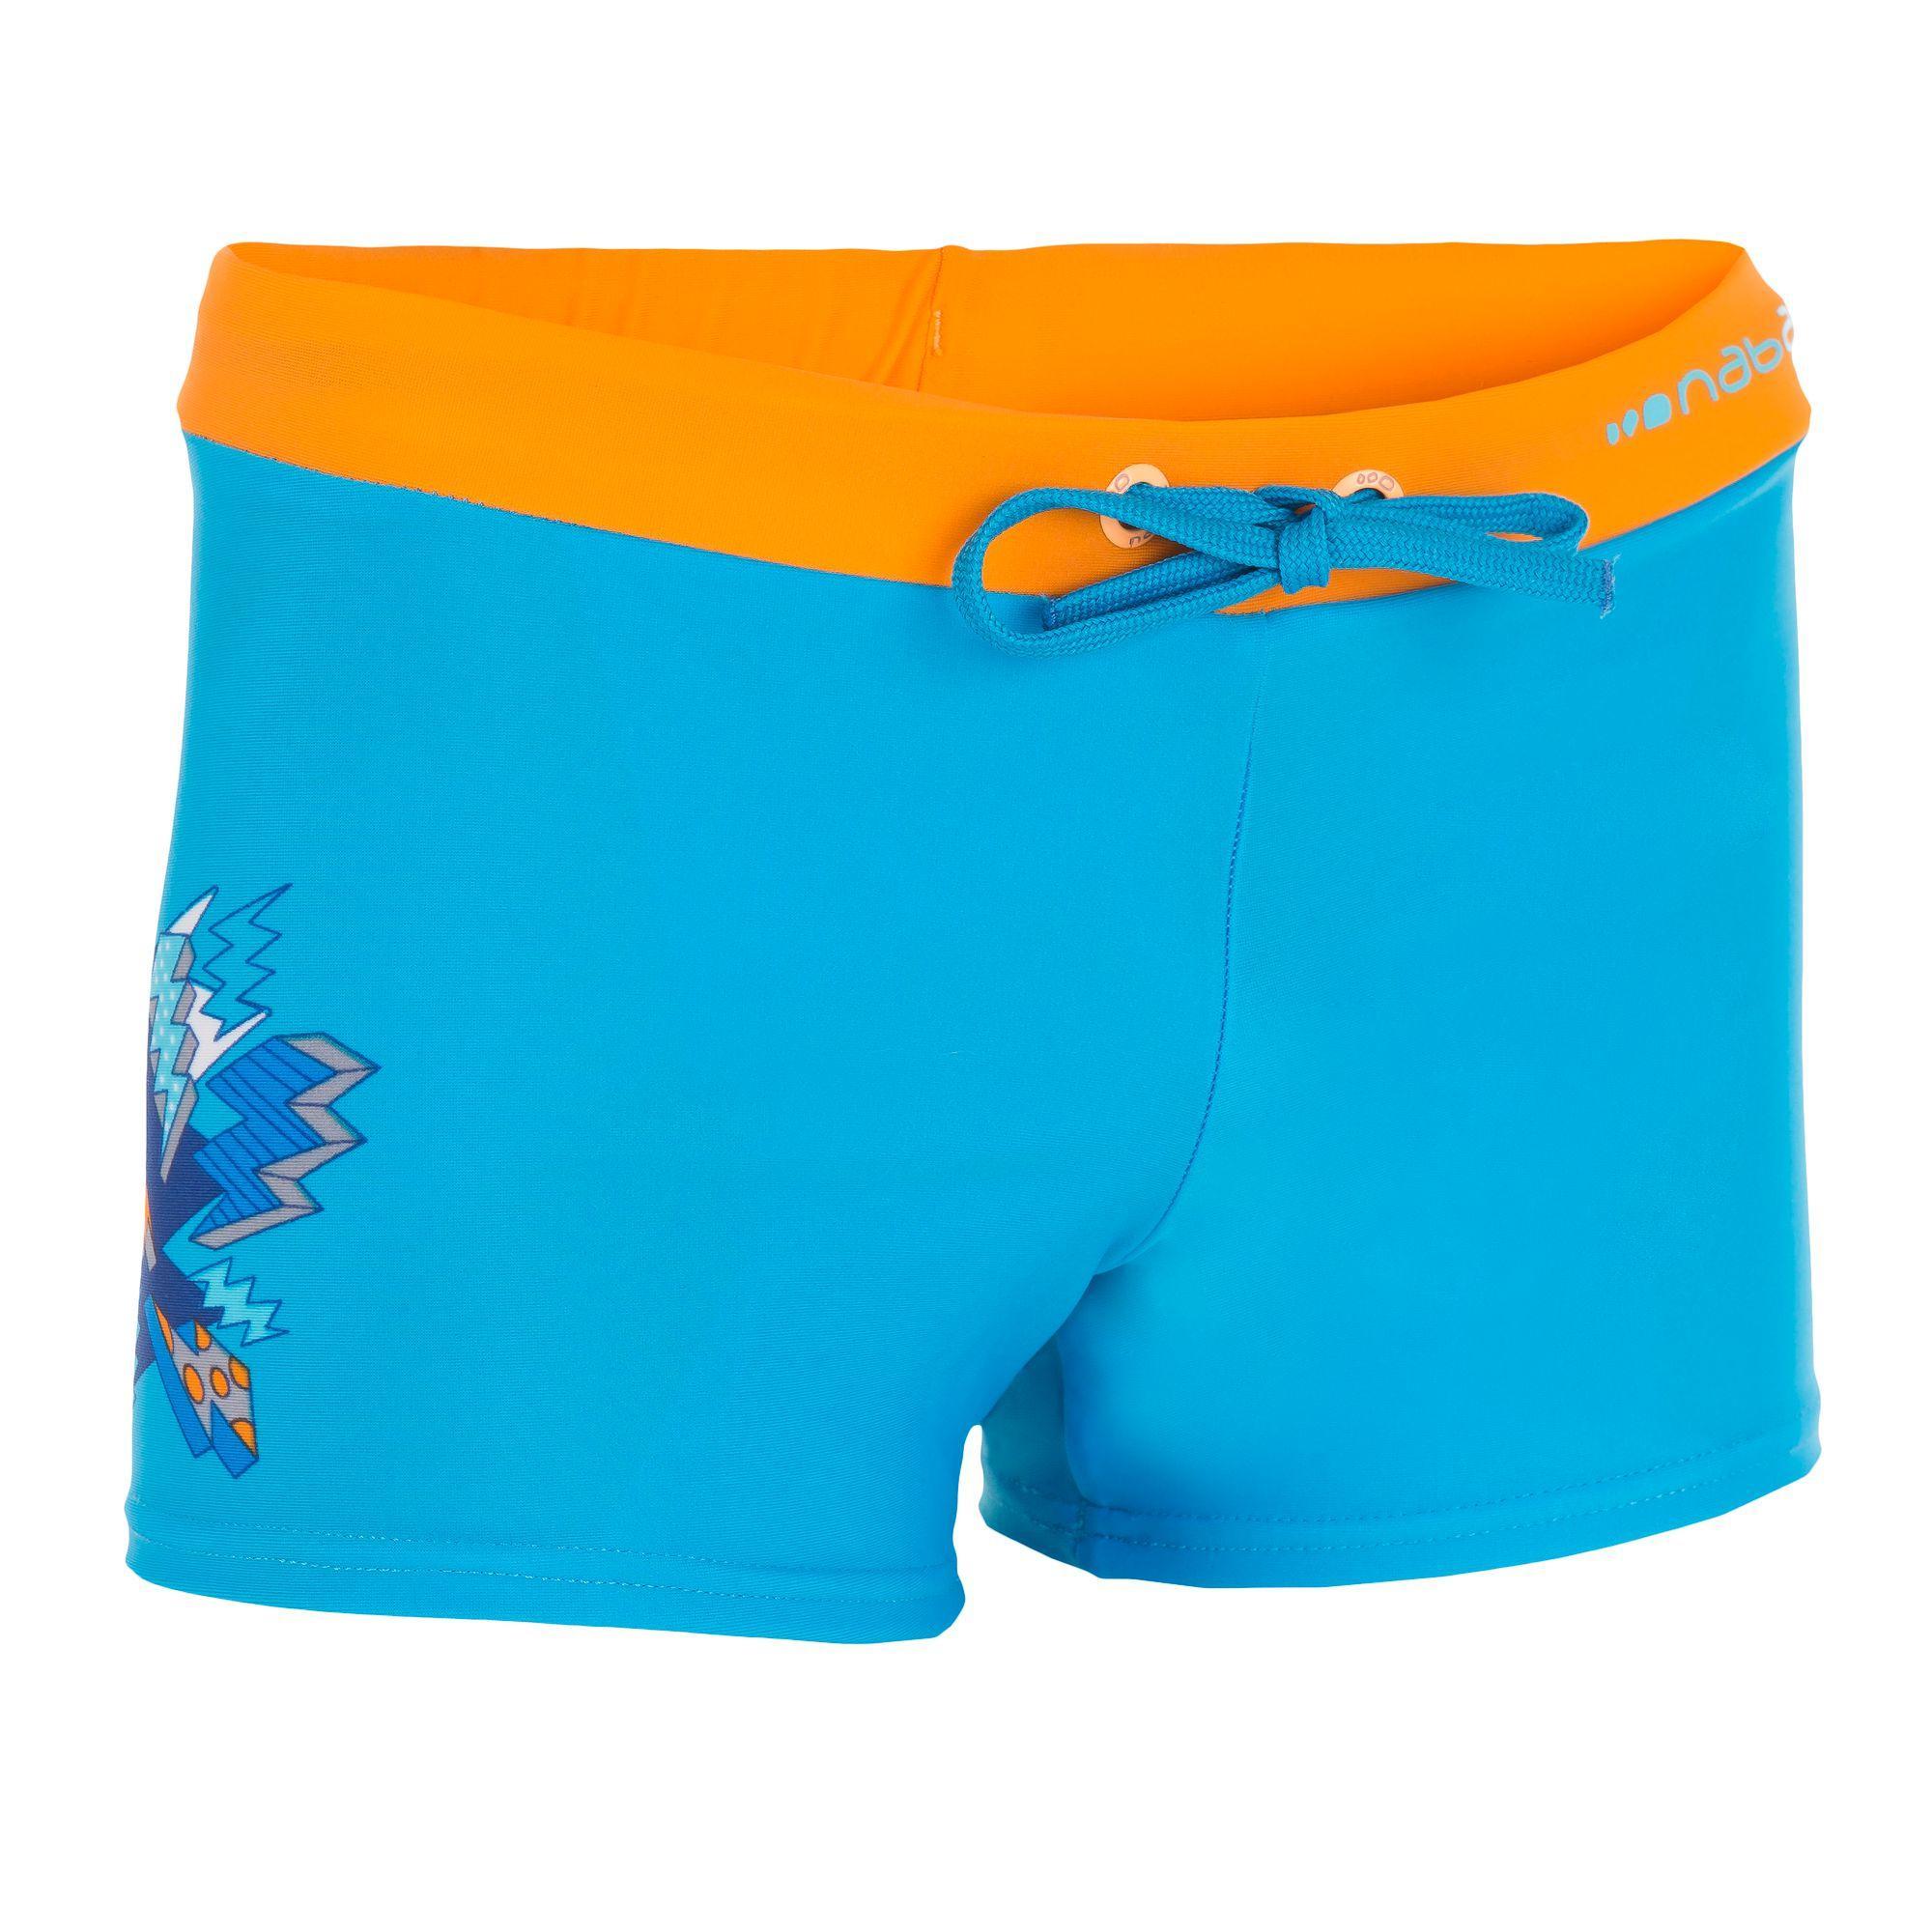 กางเกงว่ายน้ำขาสั้นสำหรับเด็กผู้ชายรุ่น B-ACTIVE PEP BUZZ (สีฟ้า/ส้ม)